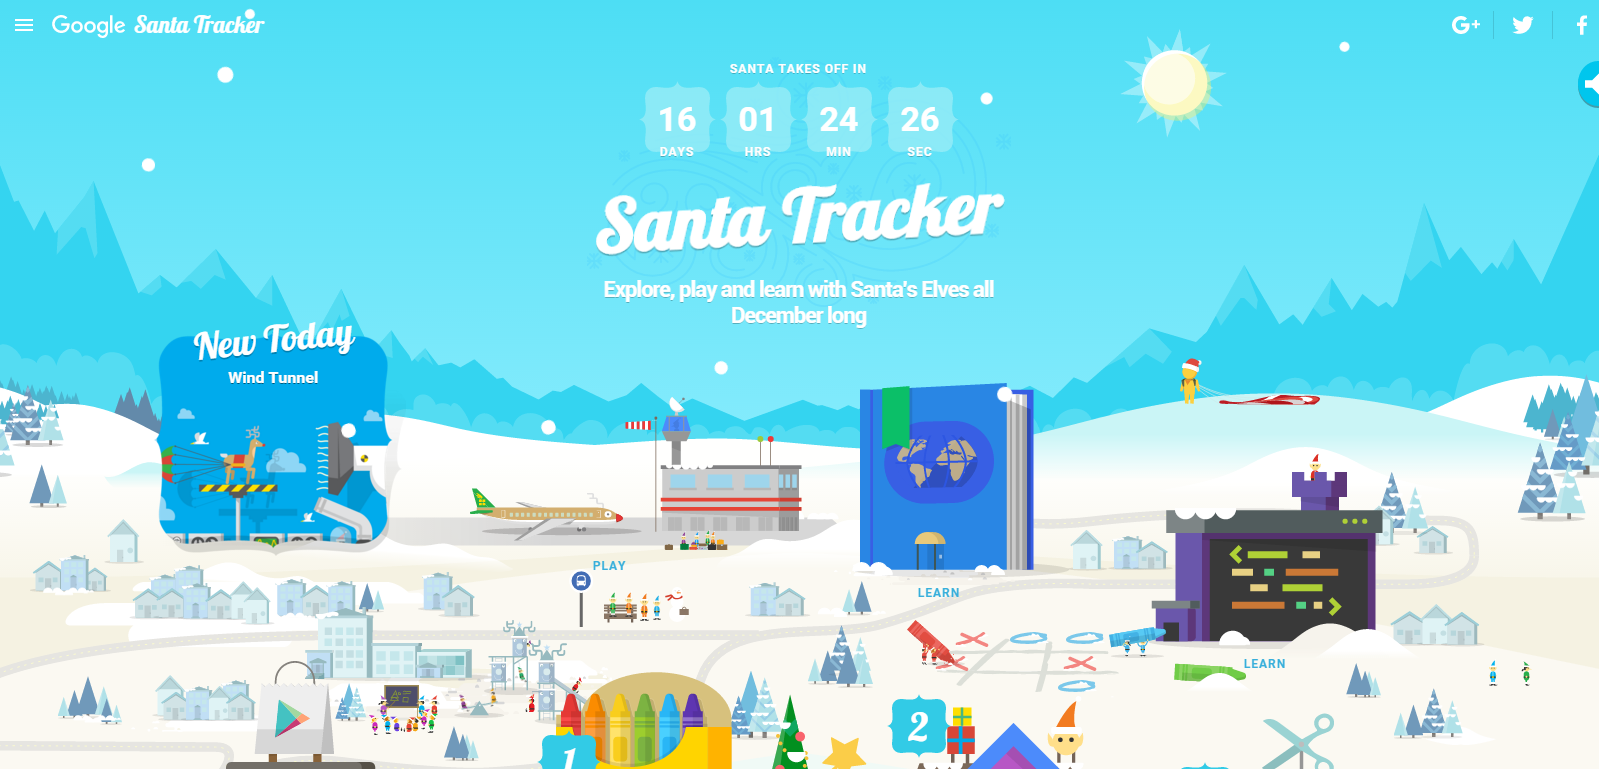 2015-12-08 09_33_30-?Google Santa Tracker.png